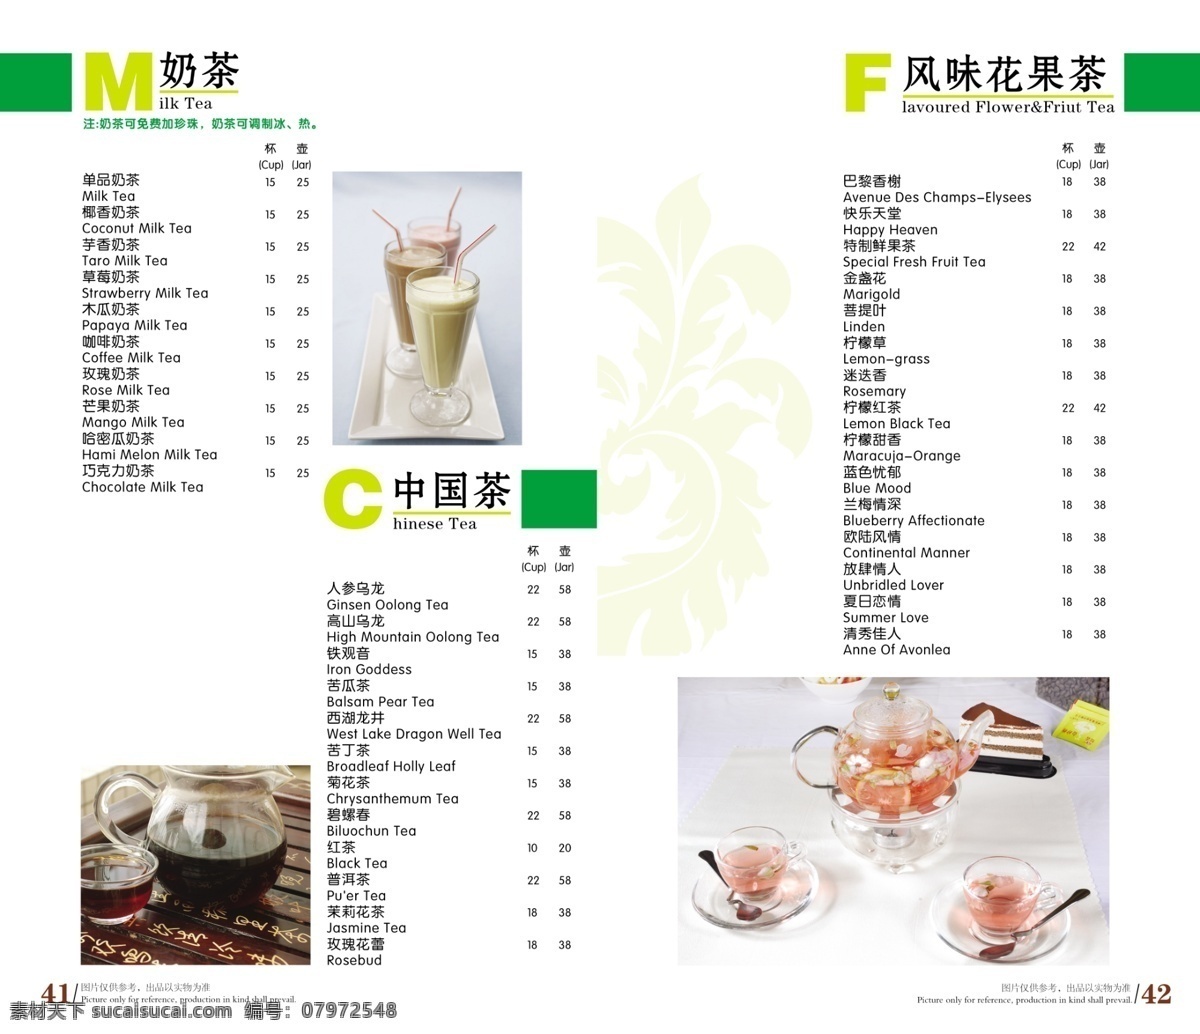 玛莎 拉 咖啡 美食 食品餐饮 菜单菜谱 分层psd 平面广告 海报 设计素材 平面模板 psd源文件 白色